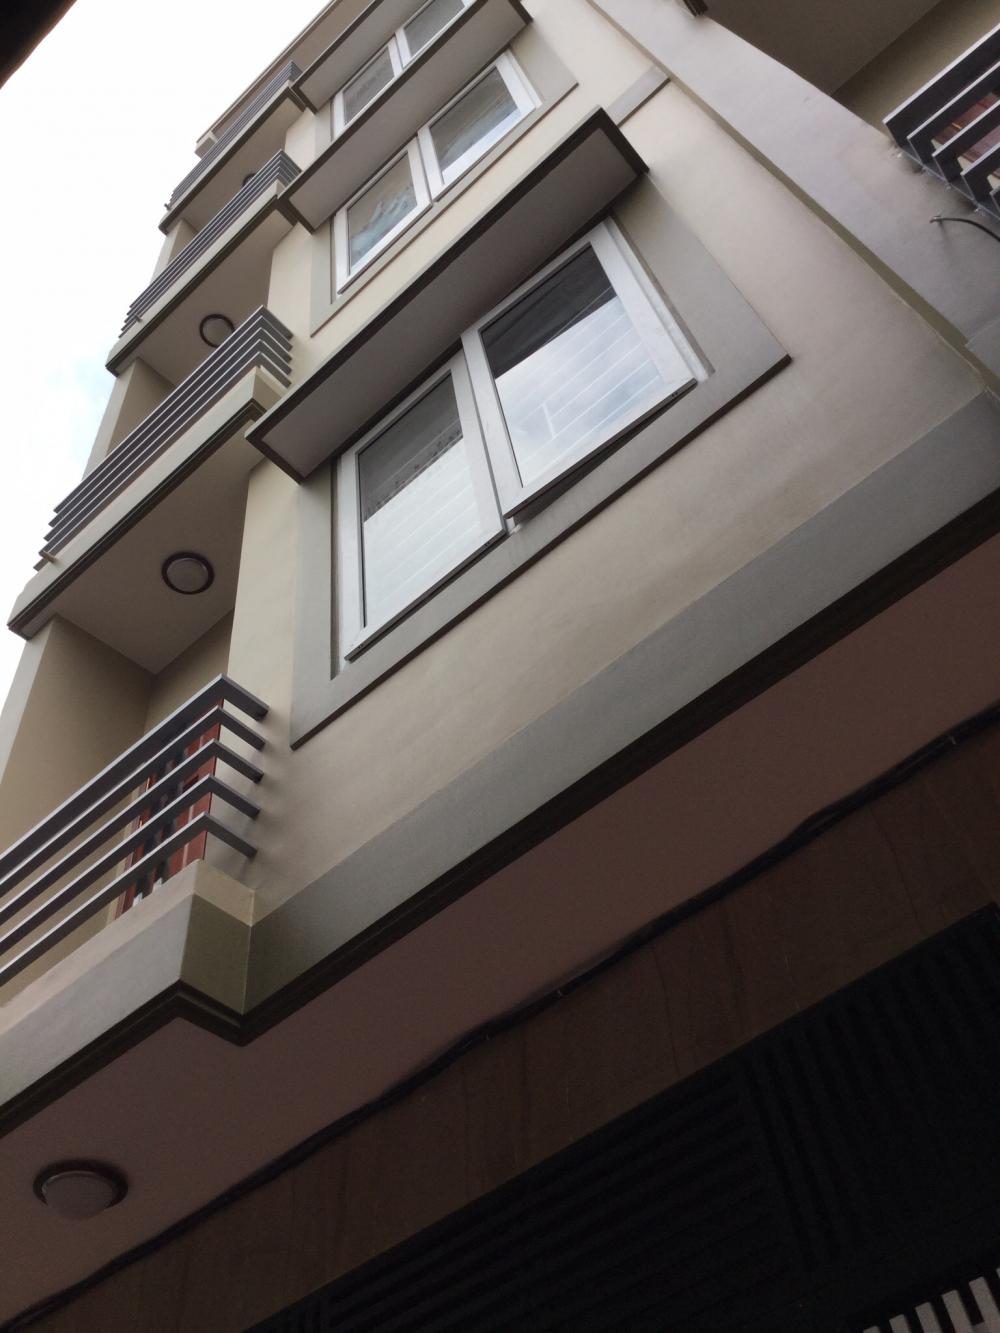 Bán nhà mặt phố tại Phố Phó Đức Chính - Quận 1 - Hồ Chí Minh Giá: 92 tỷ  Diện tích: 160m²